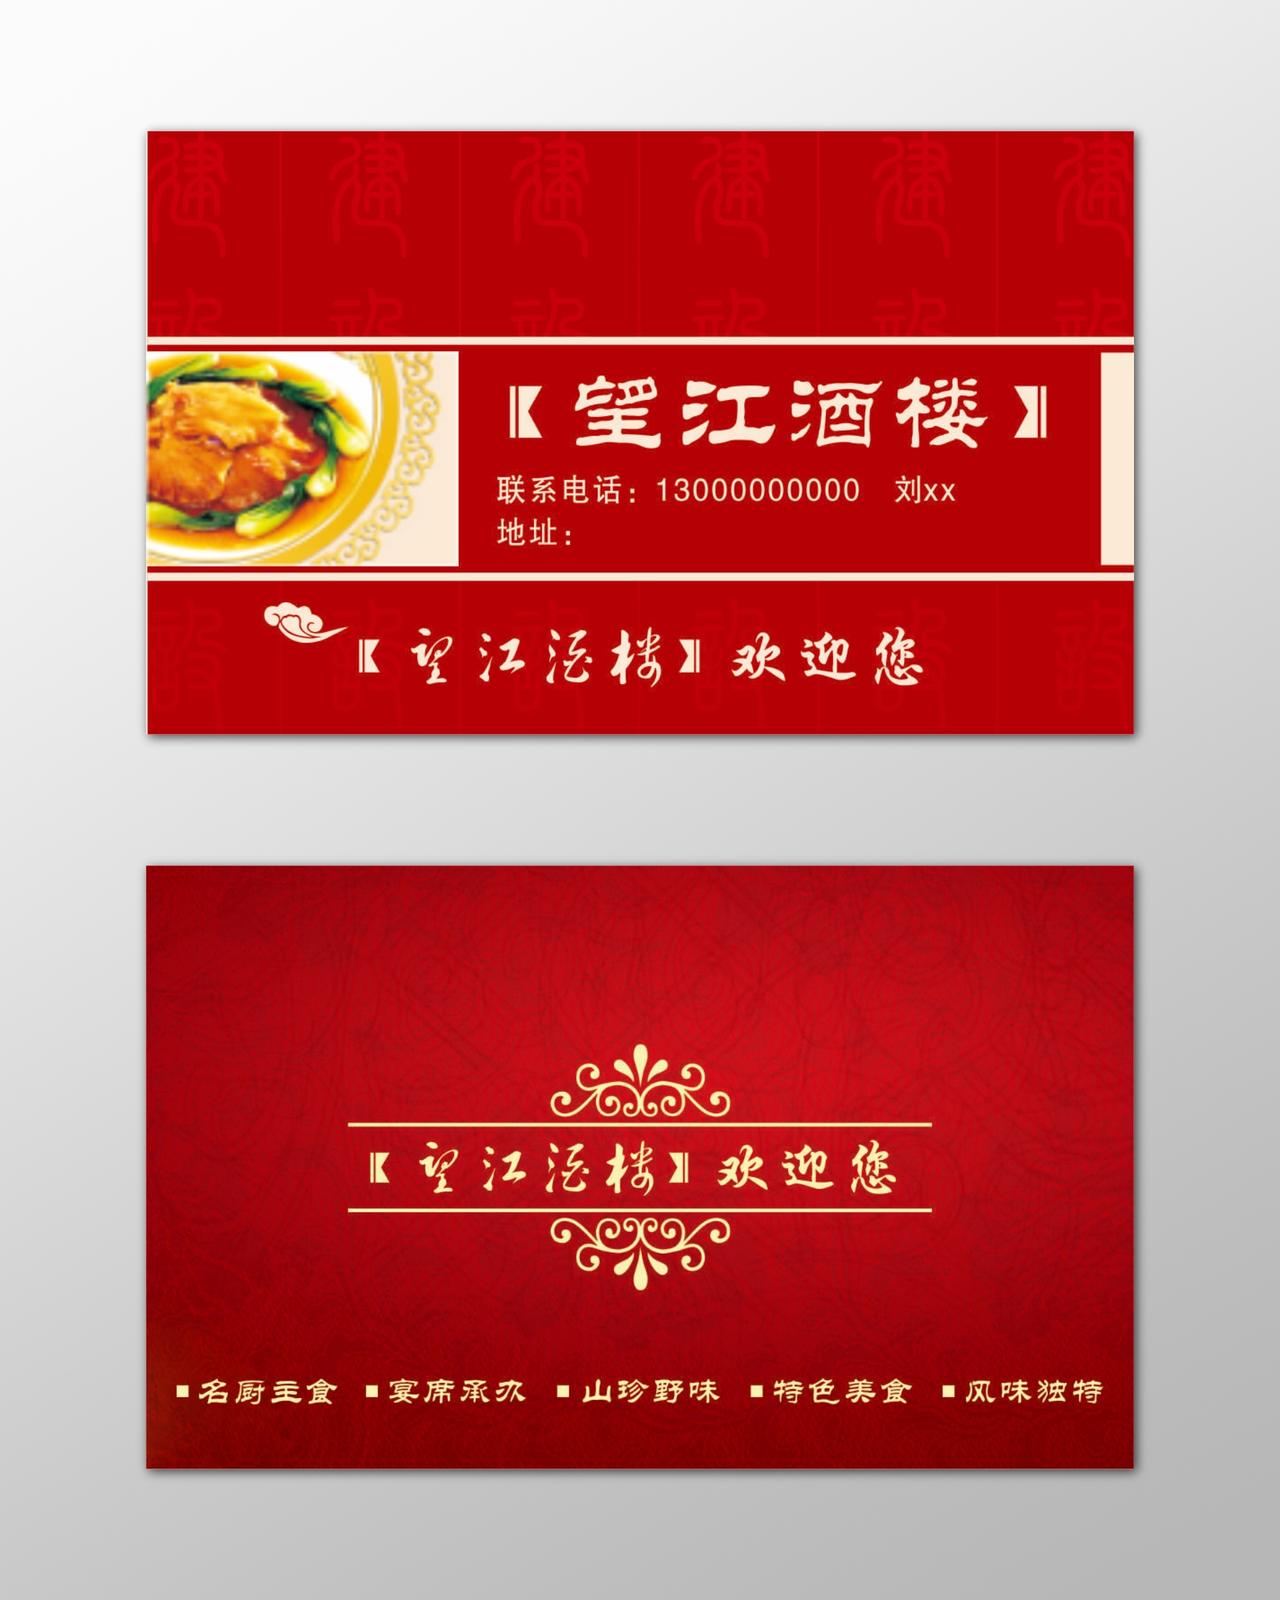 酒楼名片名厨主食风味独特红色简约名片设计模板